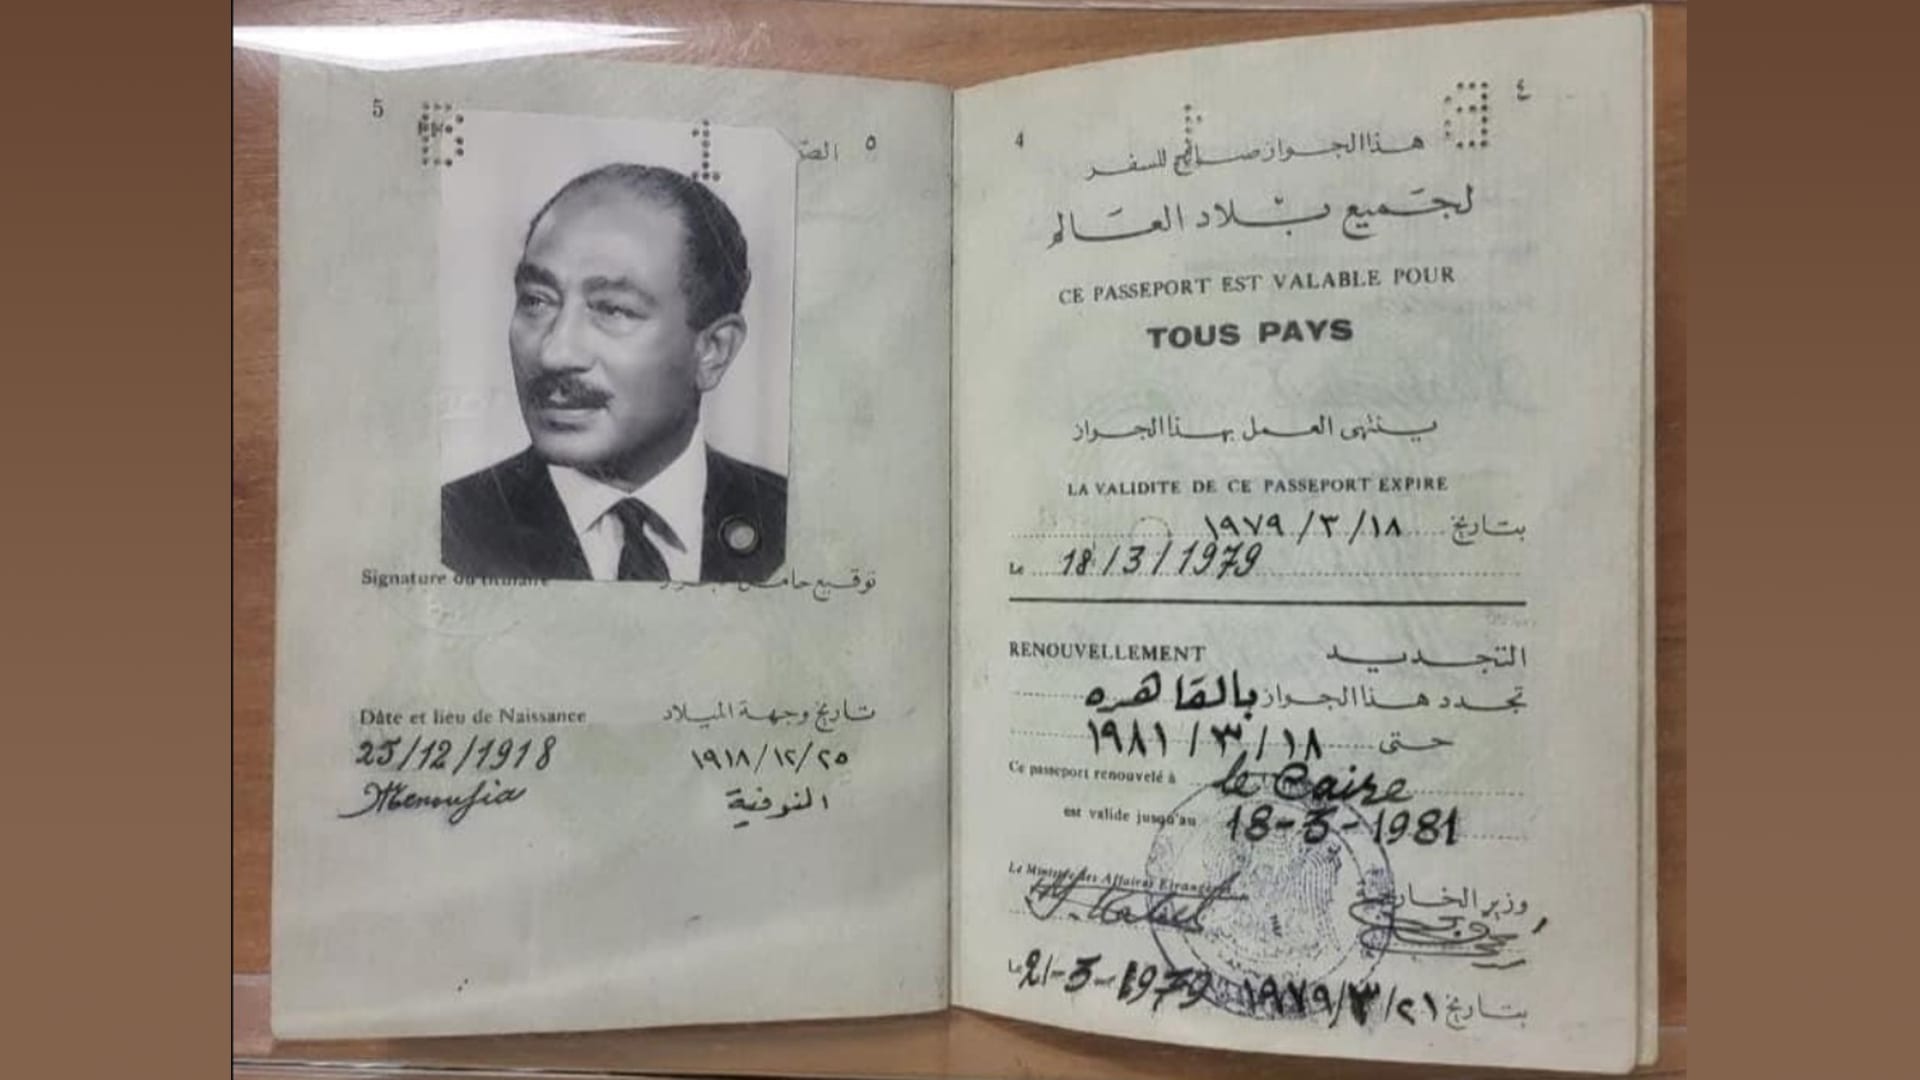 مديرمكتبة الإسكندرية يكشف لـCNN كواليس استعادة جواز سفر السادات قبل بيعه في مزاد